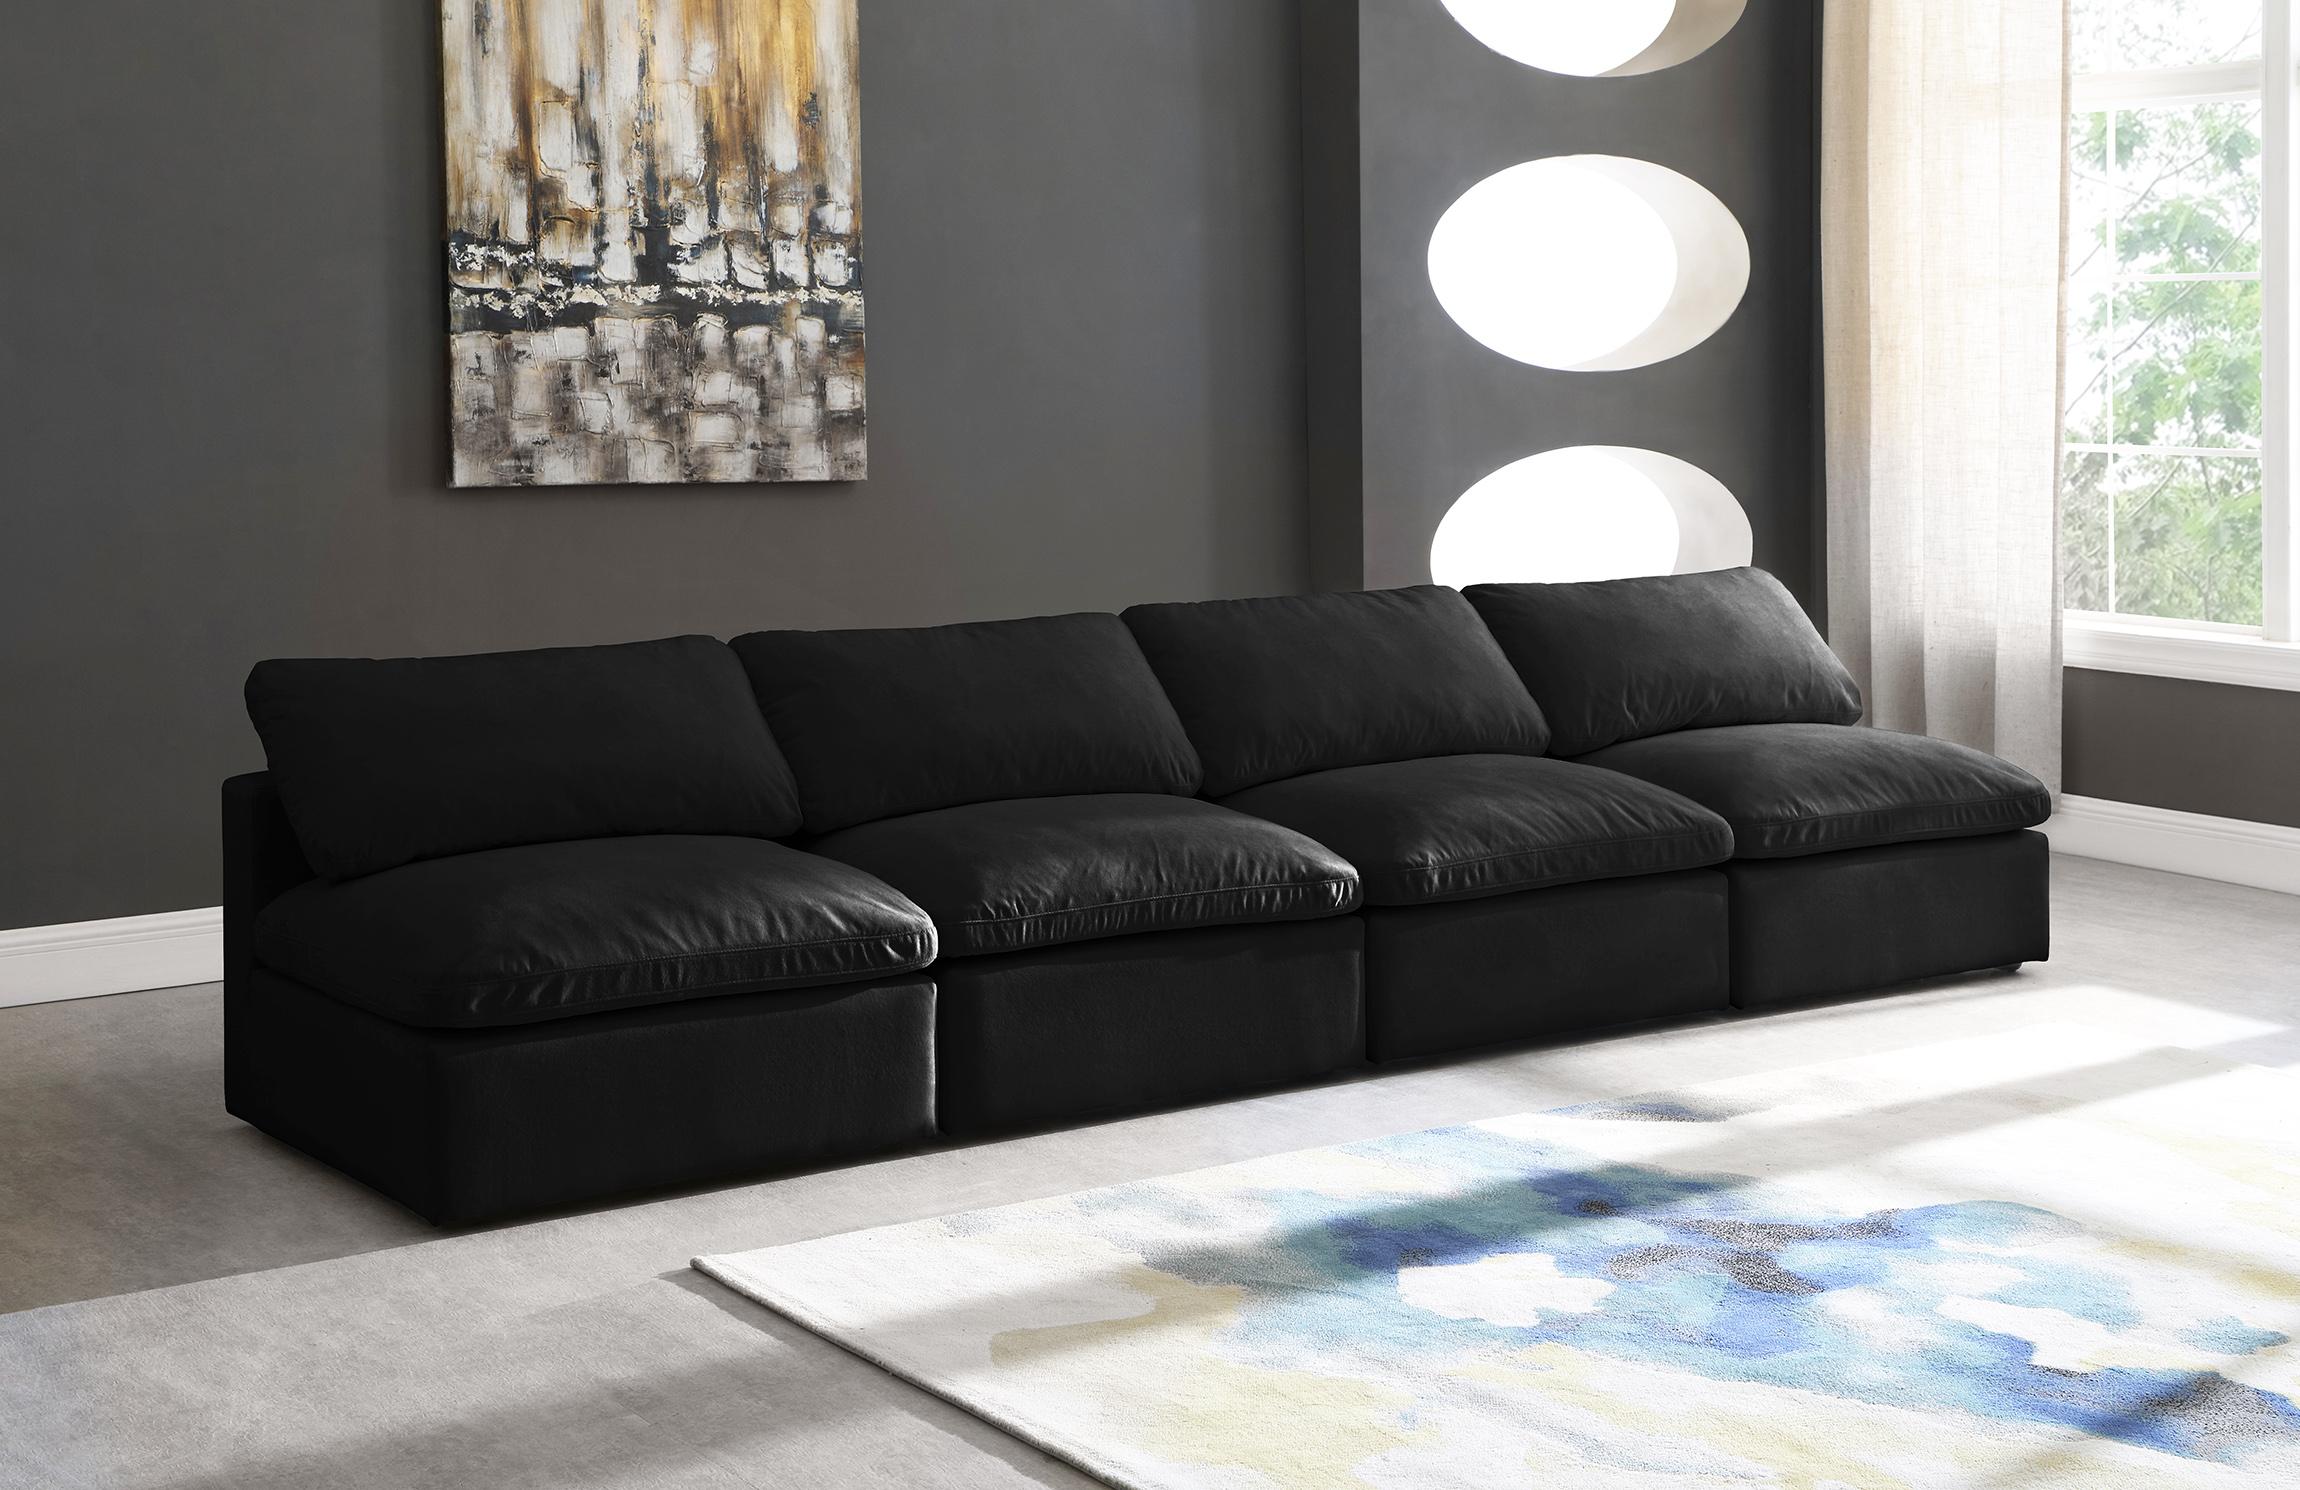 

    
BLACK Velvet Sofa Armless 140 Cloud Modular Overstuffed Down Filled SOFLEX Chic
